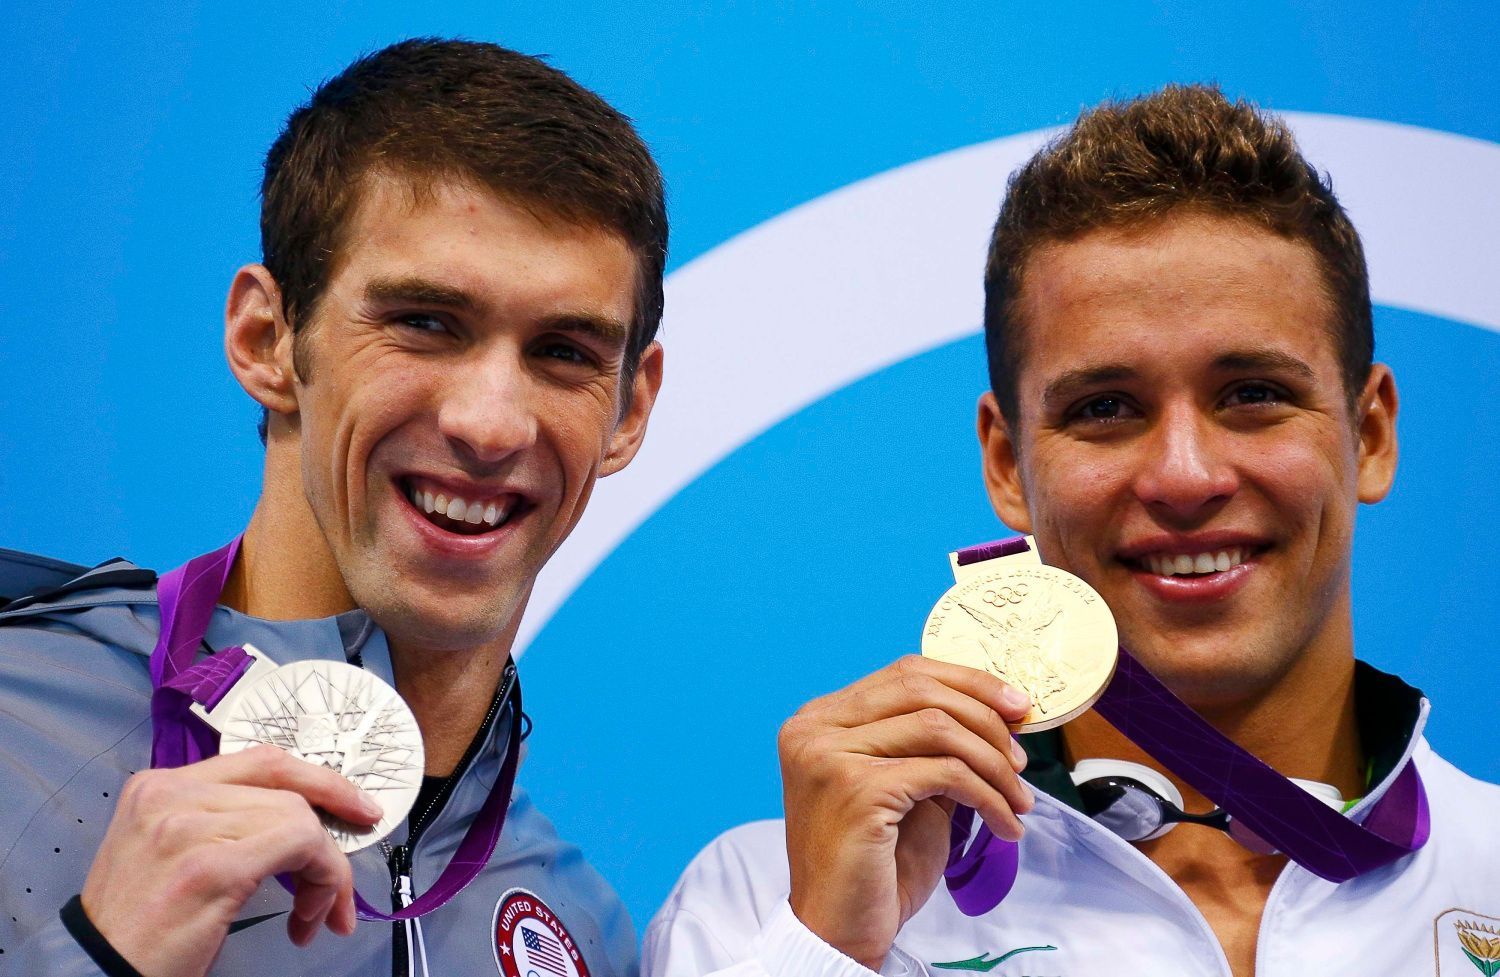 Americký plavec Michael Phelps pózuje se stříbrnou medailí a vedle něj Jihoafričan Chad le Clos se zlatou za 200 metrů motýlek na OH 2012 v Londýně.